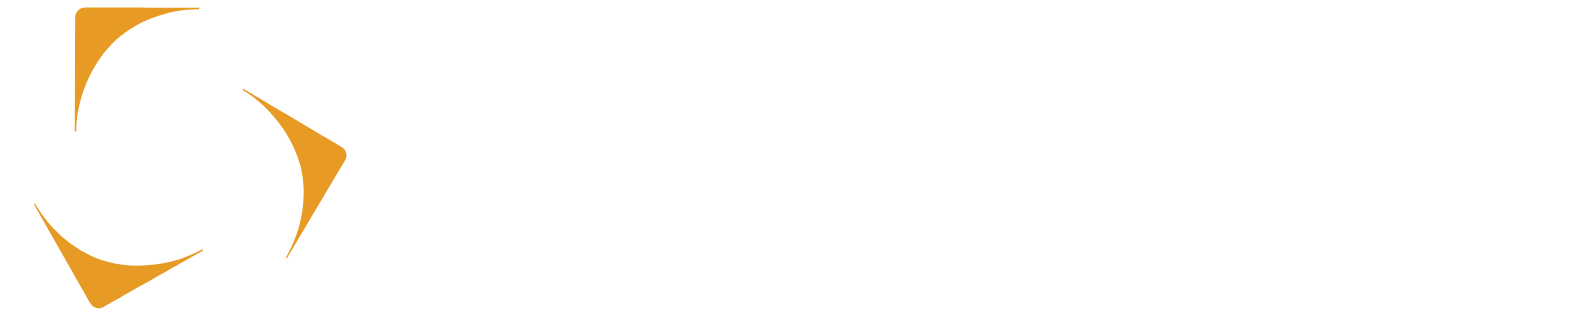 Kazatomprom Logo groß für dunkle Hintergründe (transparentes PNG)